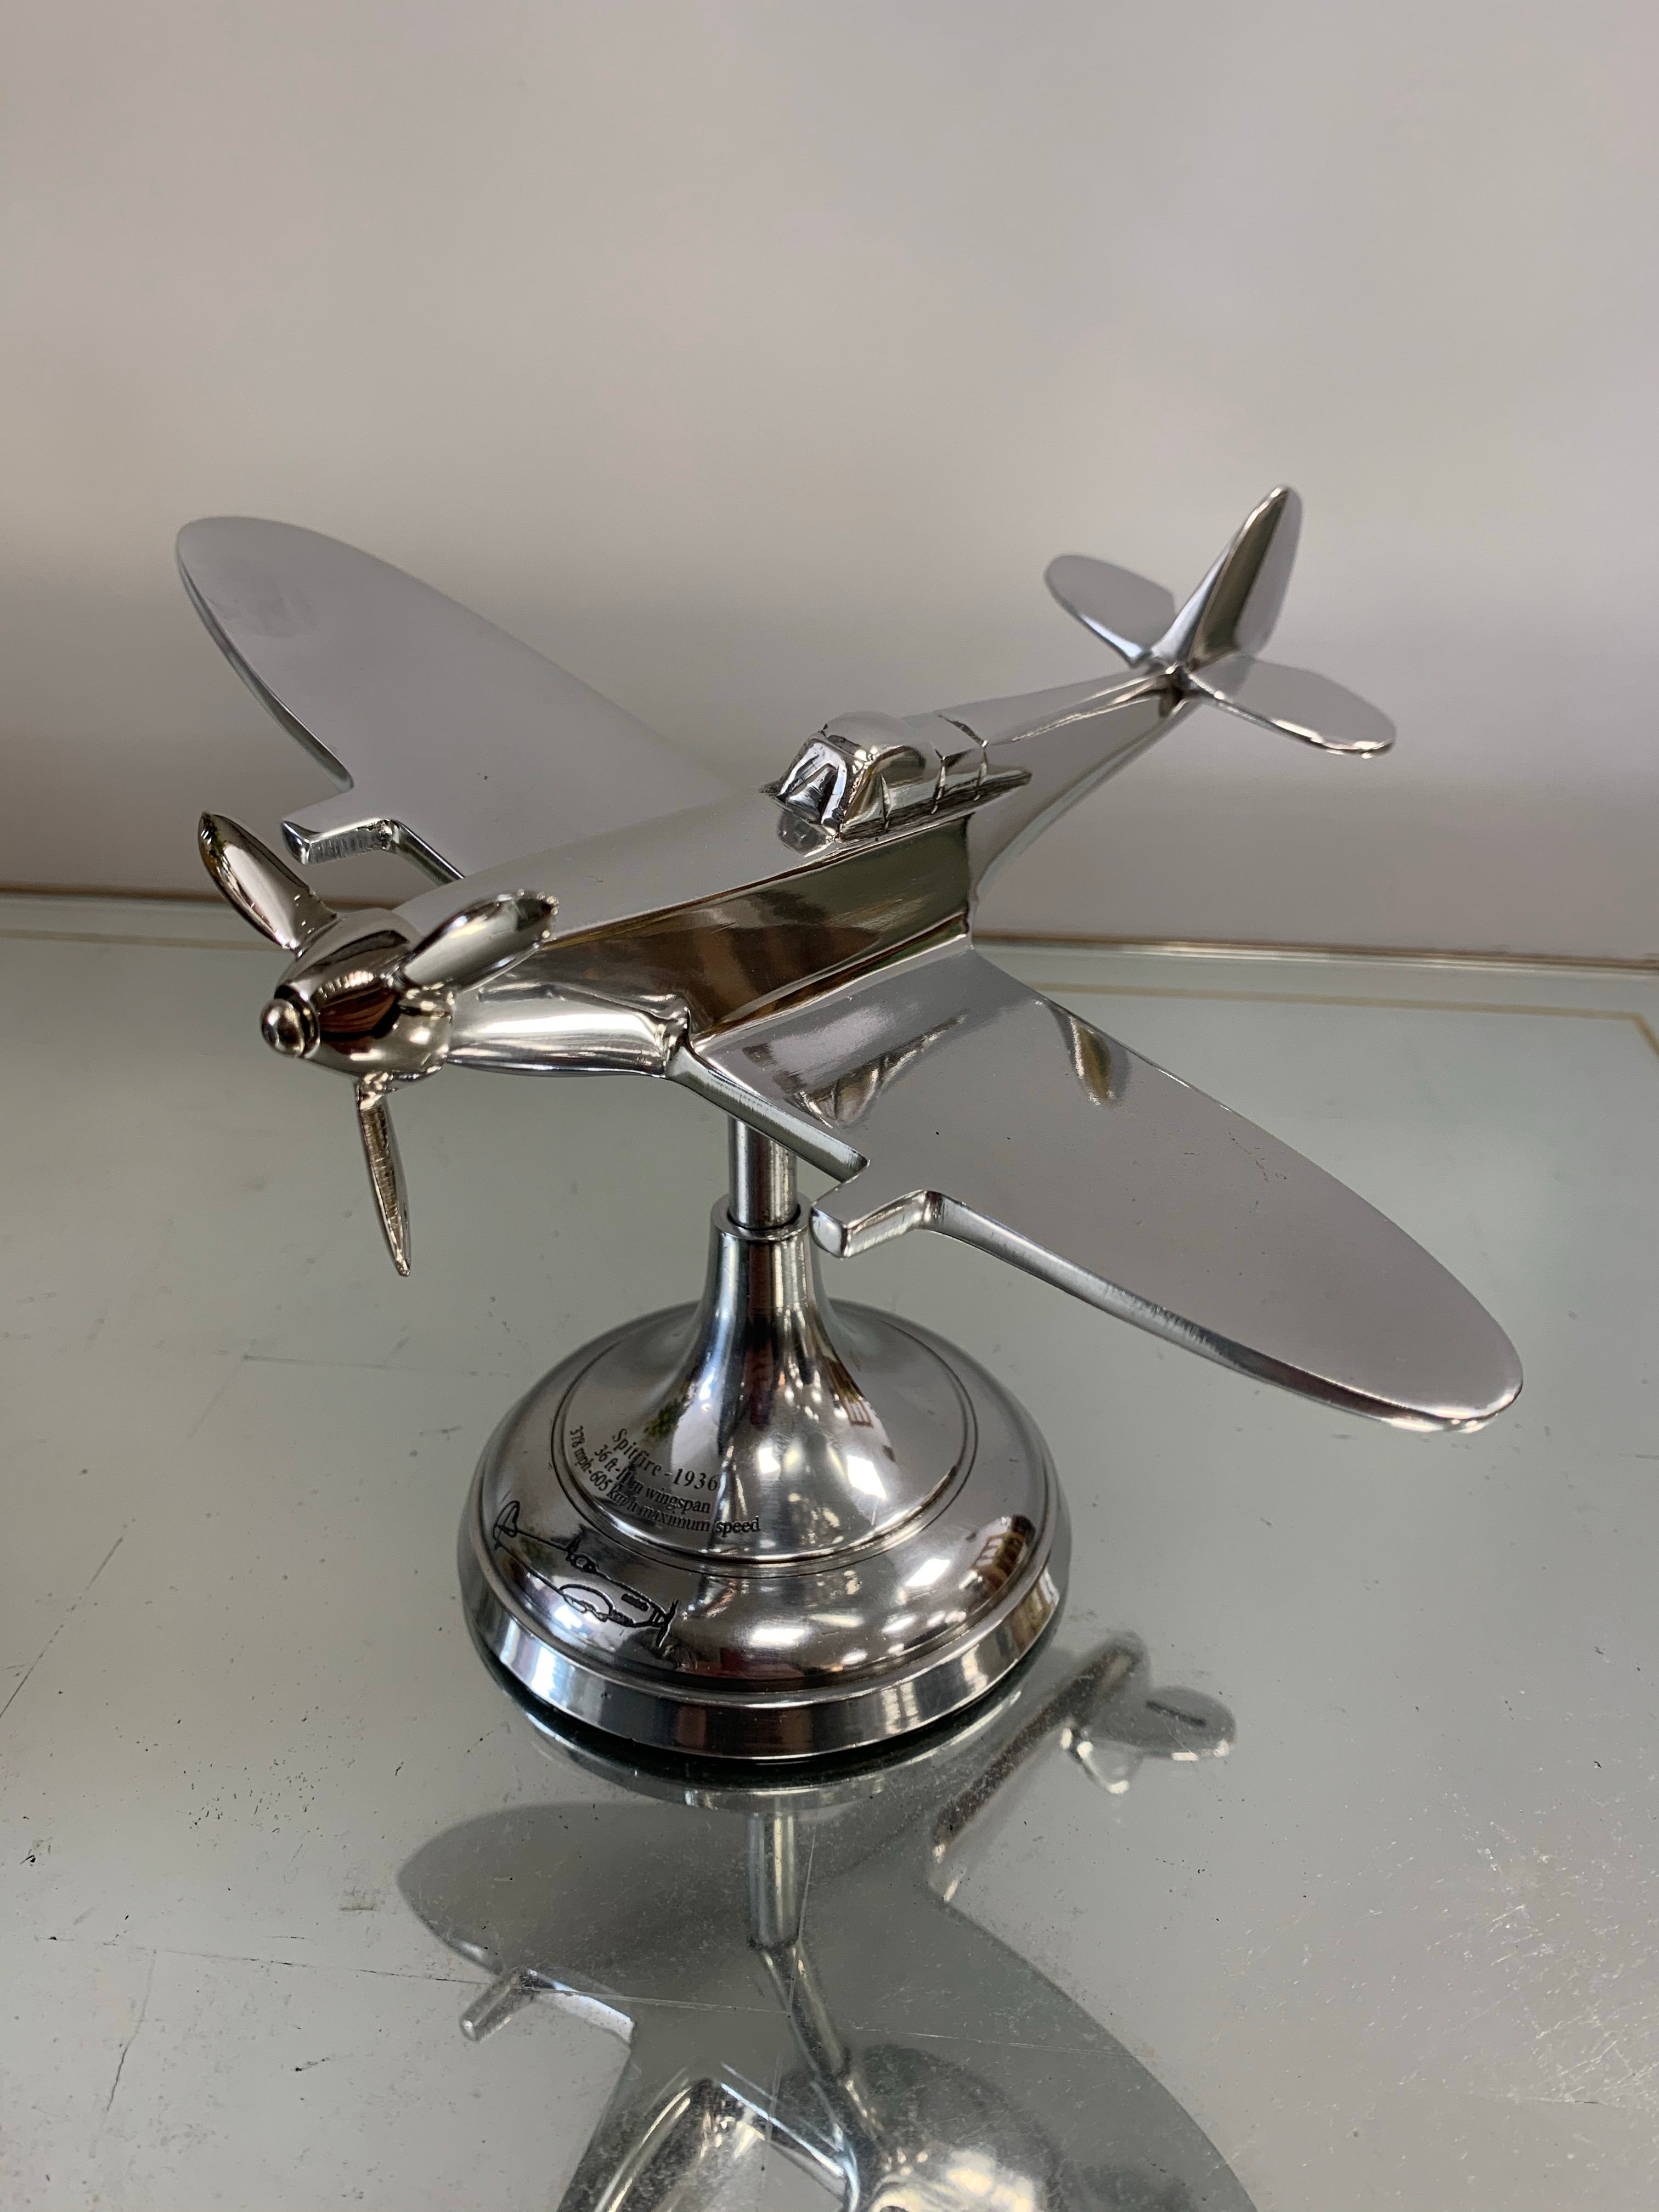 Spitfire Travel Model – AP099